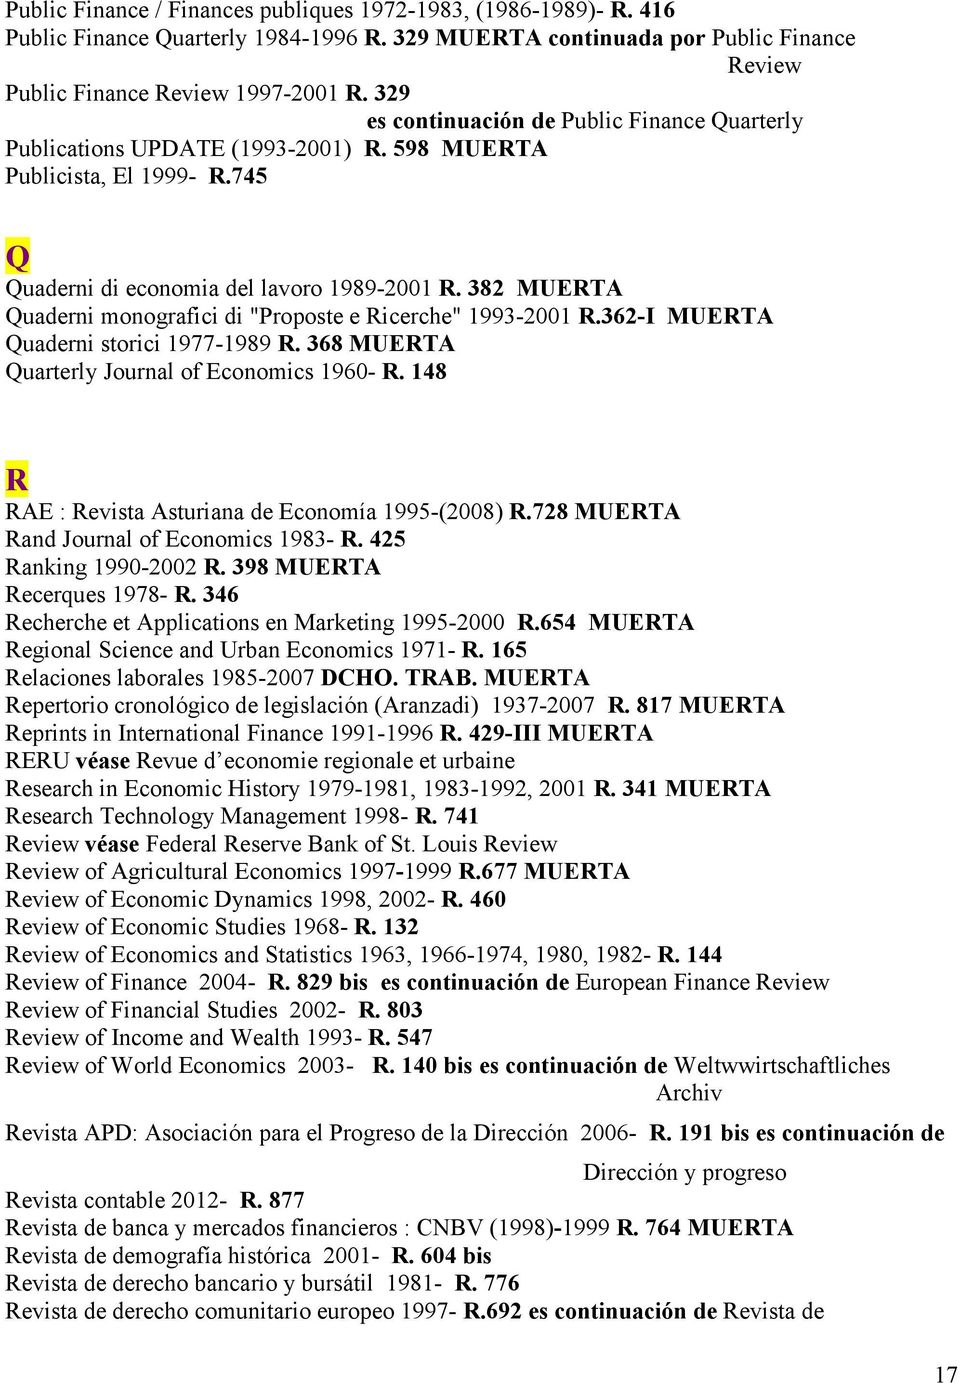 382 MUERTA Quaderni monografici di "Proposte e Ricerche" 1993-2001 R.362-I MUERTA Quaderni storici 1977-1989 R. 368 MUERTA Quarterly Journal of Economics 1960- R.